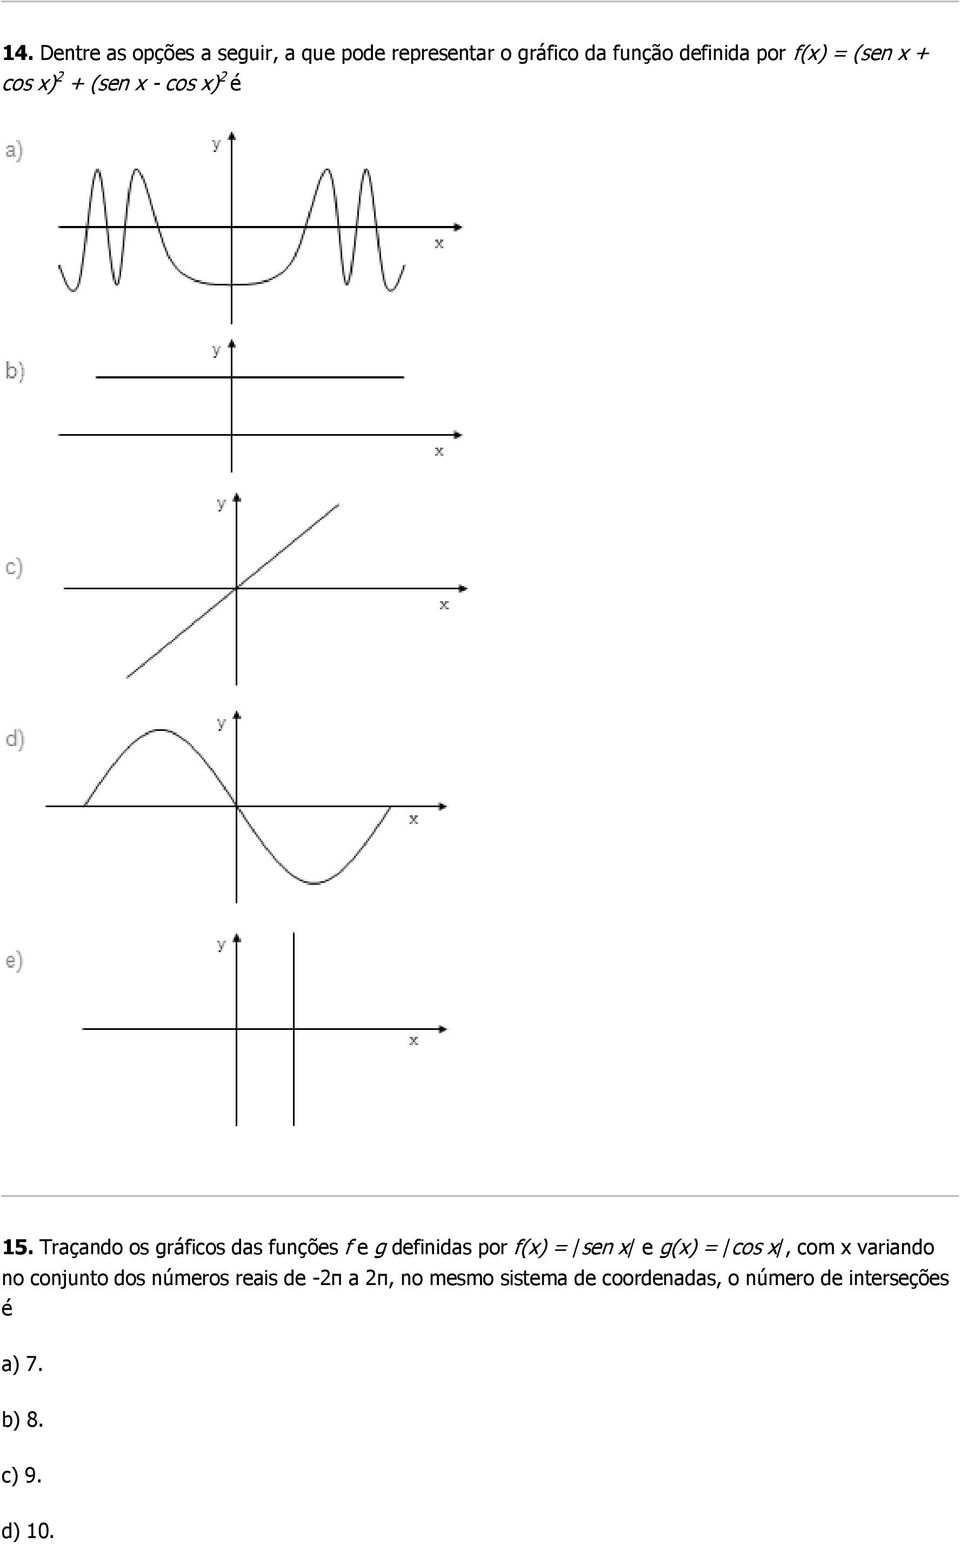 Traçando os gráficos das funções f e g definidas por f(x) = /sen x/ e g(x) = /cos x/, com x